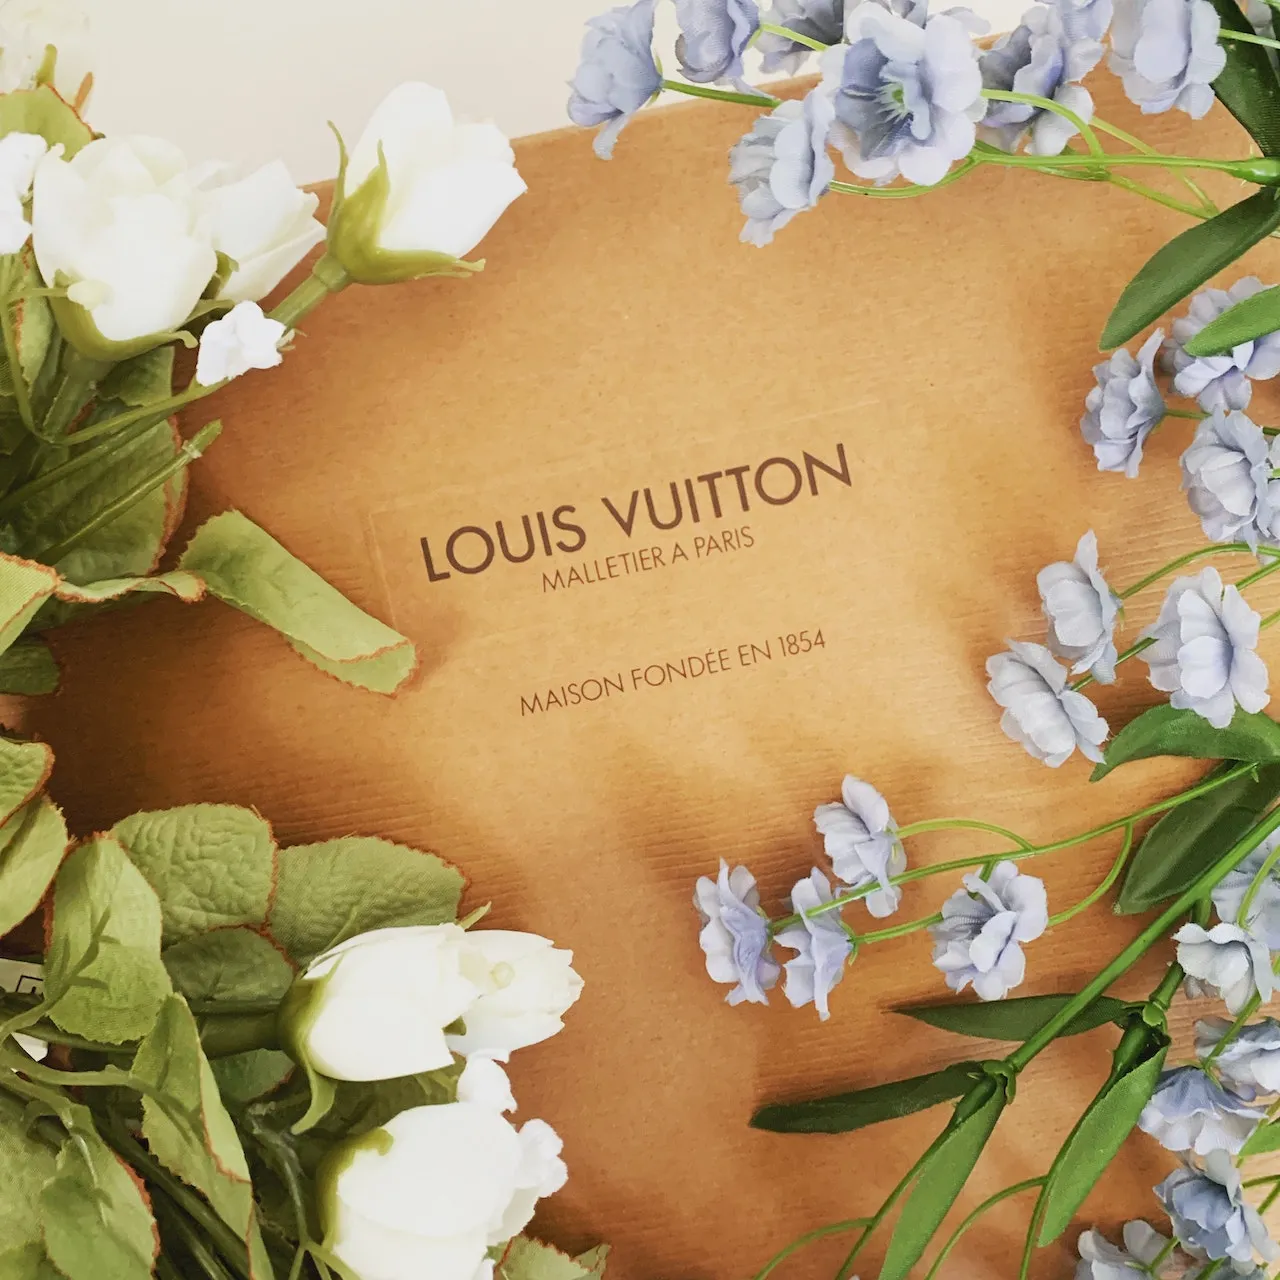 LV DREAM: Louis Vuitton inaugura nuova destinazione culturale a Parigi